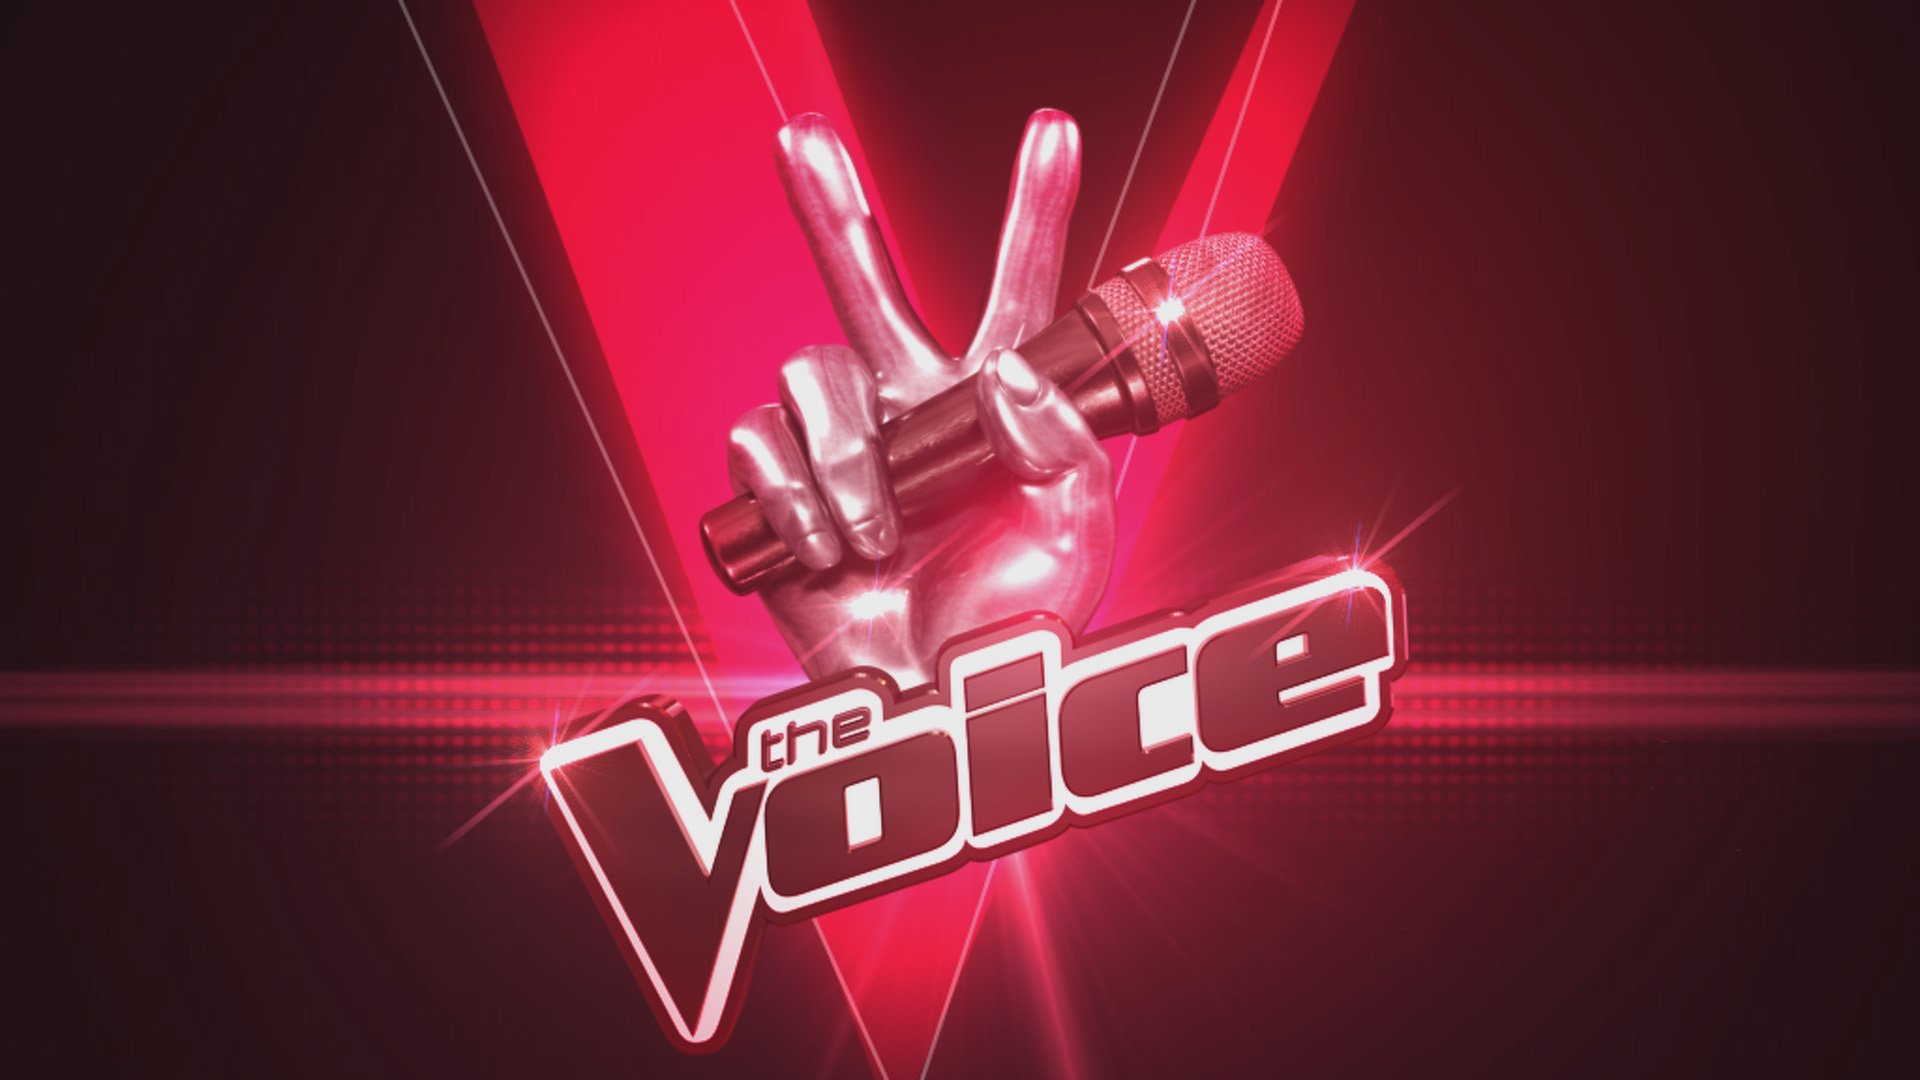 Voice тема. Голос. Шоу голос логотип. Шоу голос заставка. The Voices.